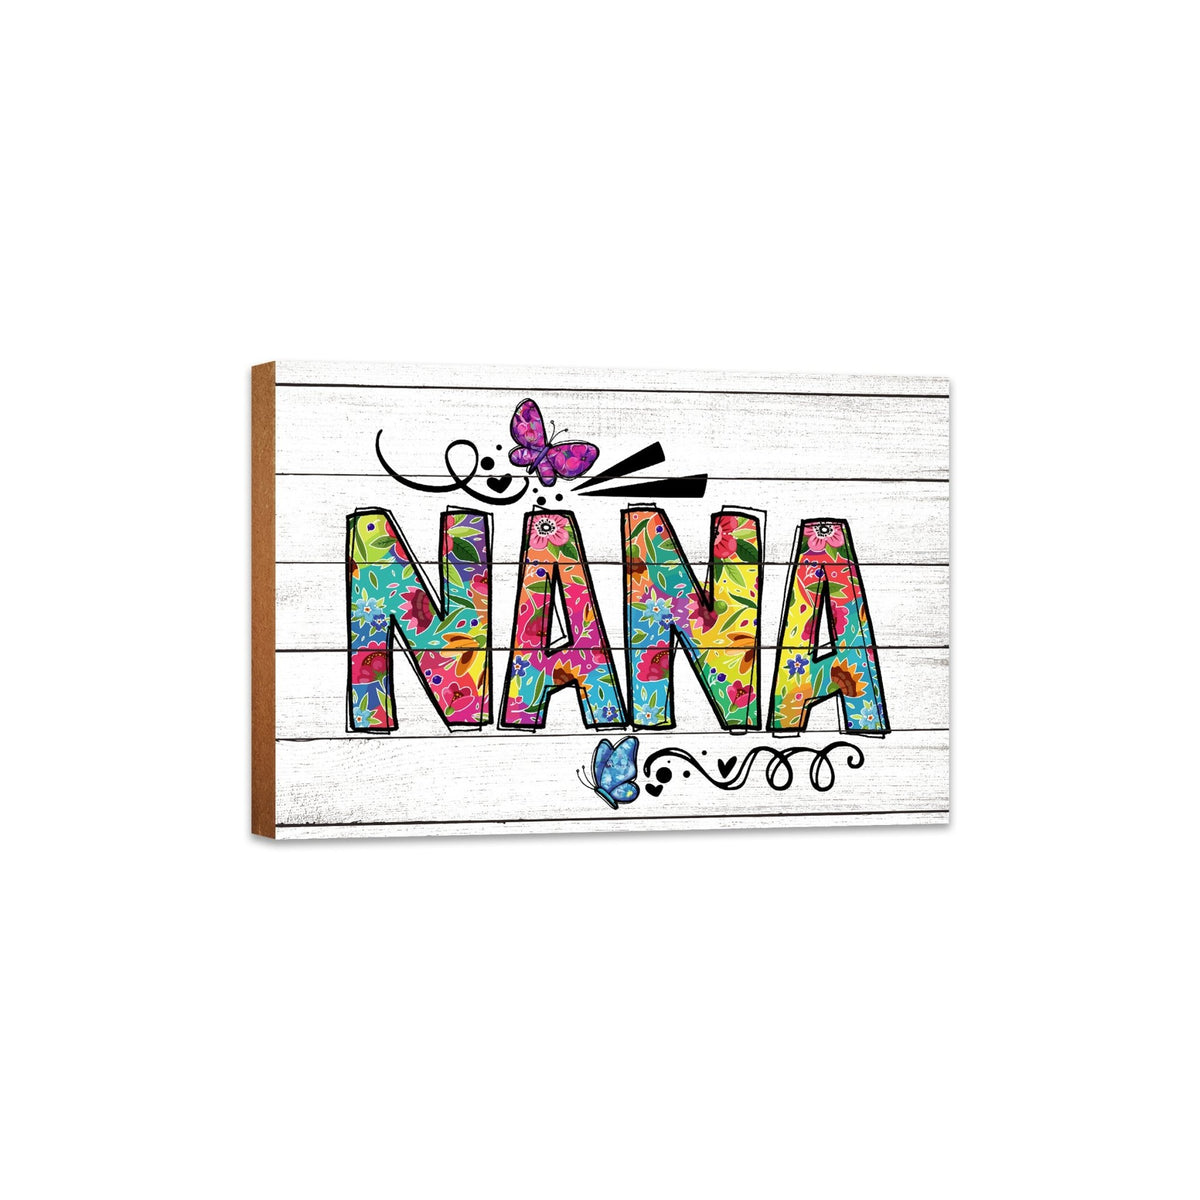 Modern-Inspired White Wooden Graffiti Art Shelf Sitter Gift Idea &amp; Home Décor - Nana - LifeSong Milestones